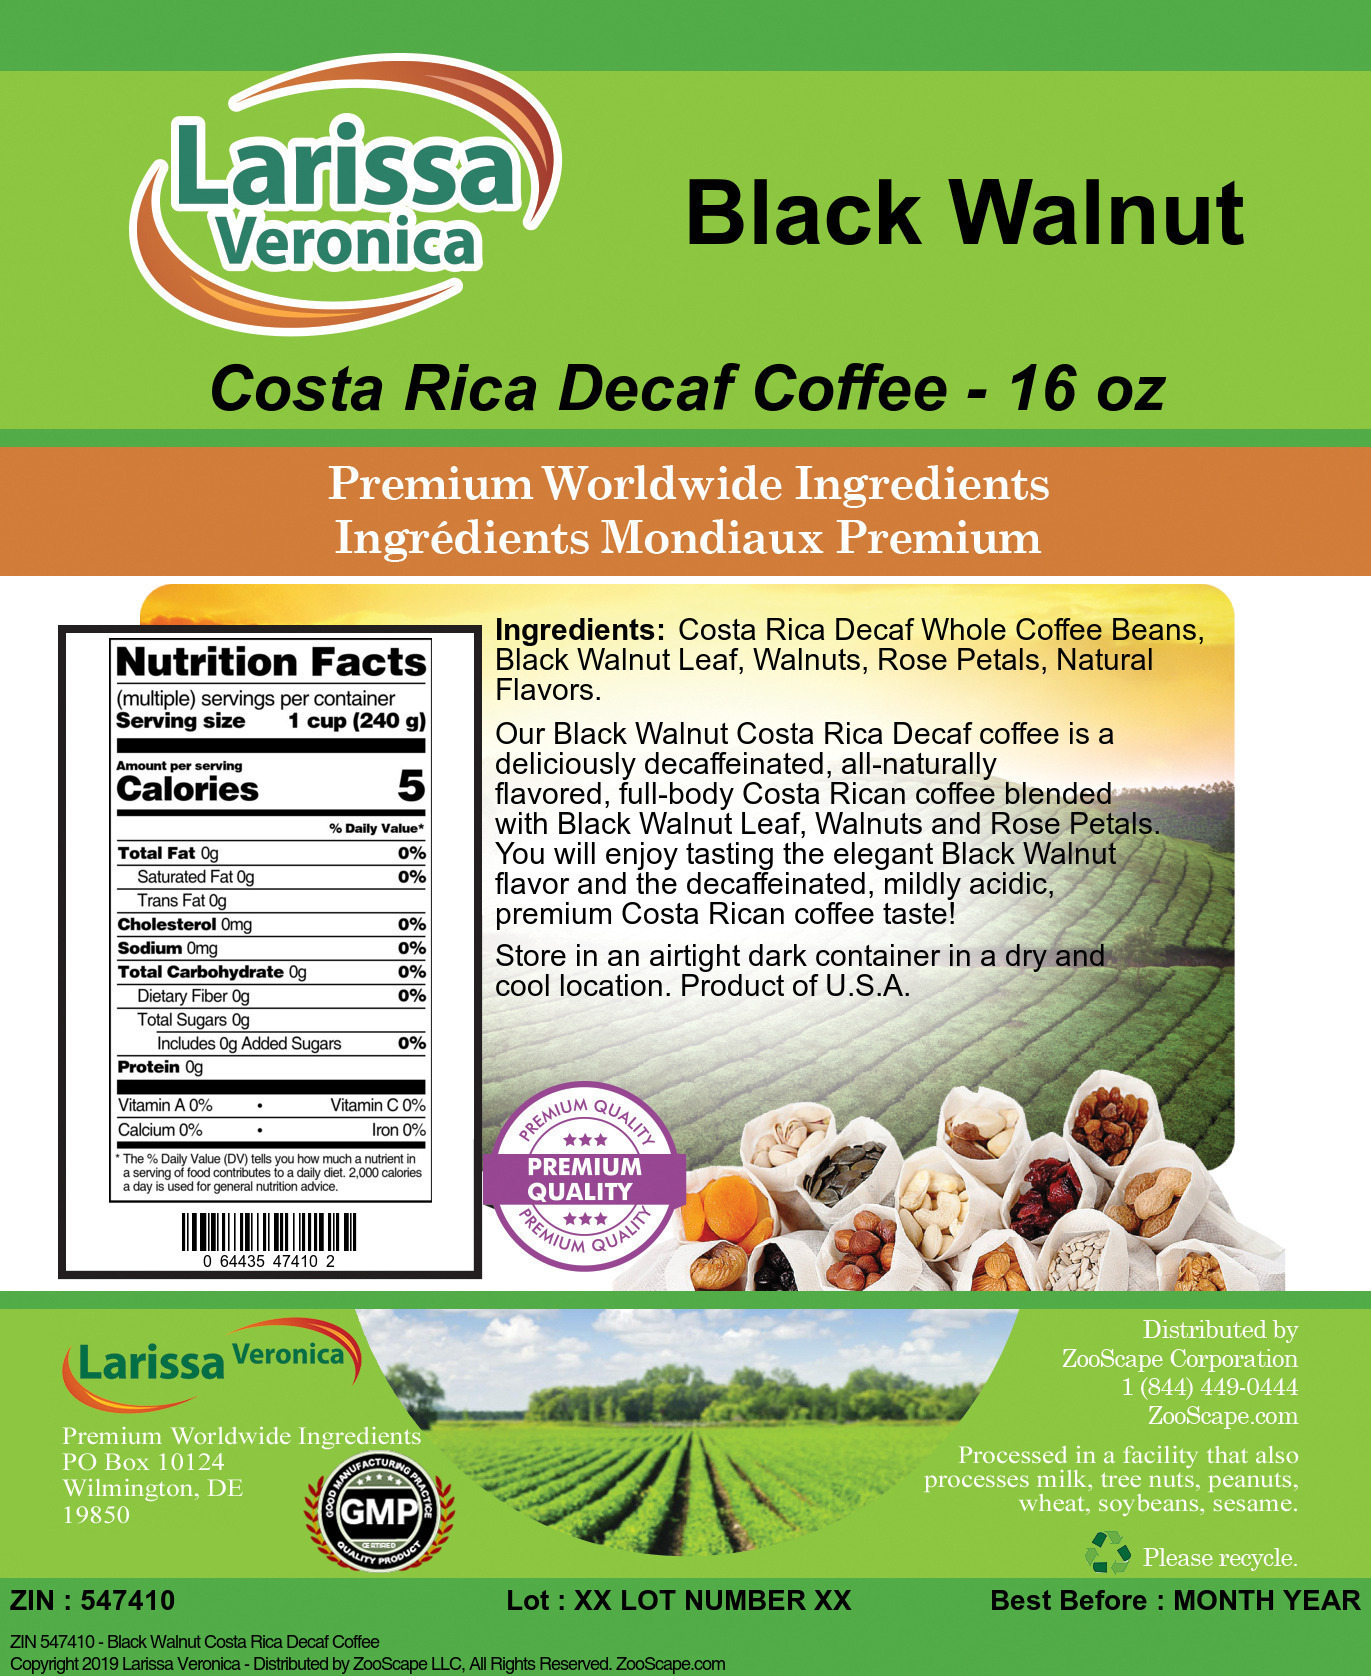 Black Walnut Costa Rica Decaf Coffee - Label